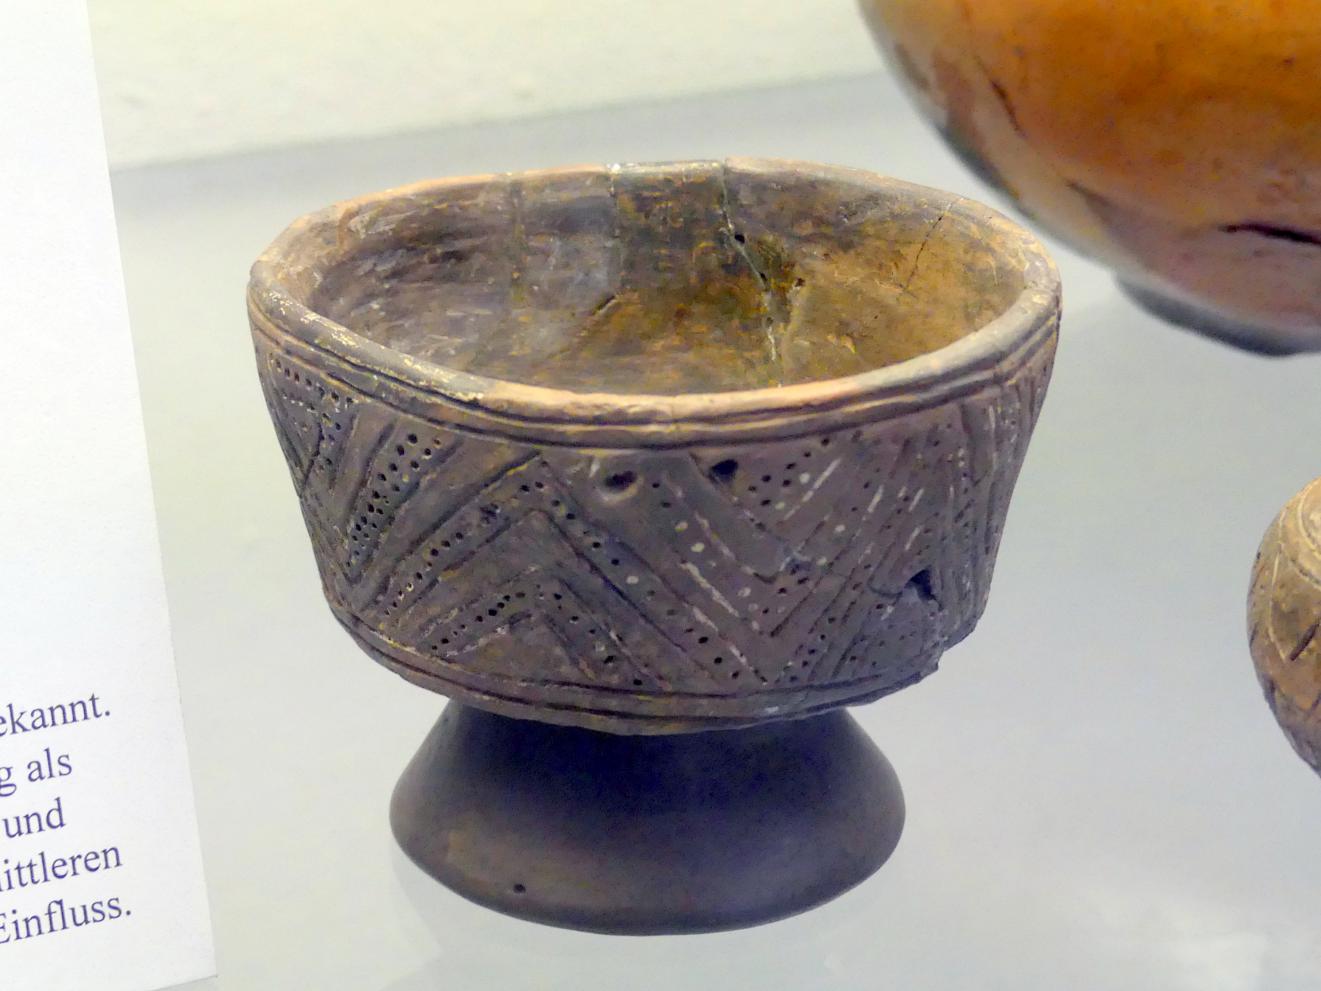 Fußschale mit konischem Gefäßkörper, Frühe Bronzezeit, 3365 - 1200 v. Chr., Bild 1/2